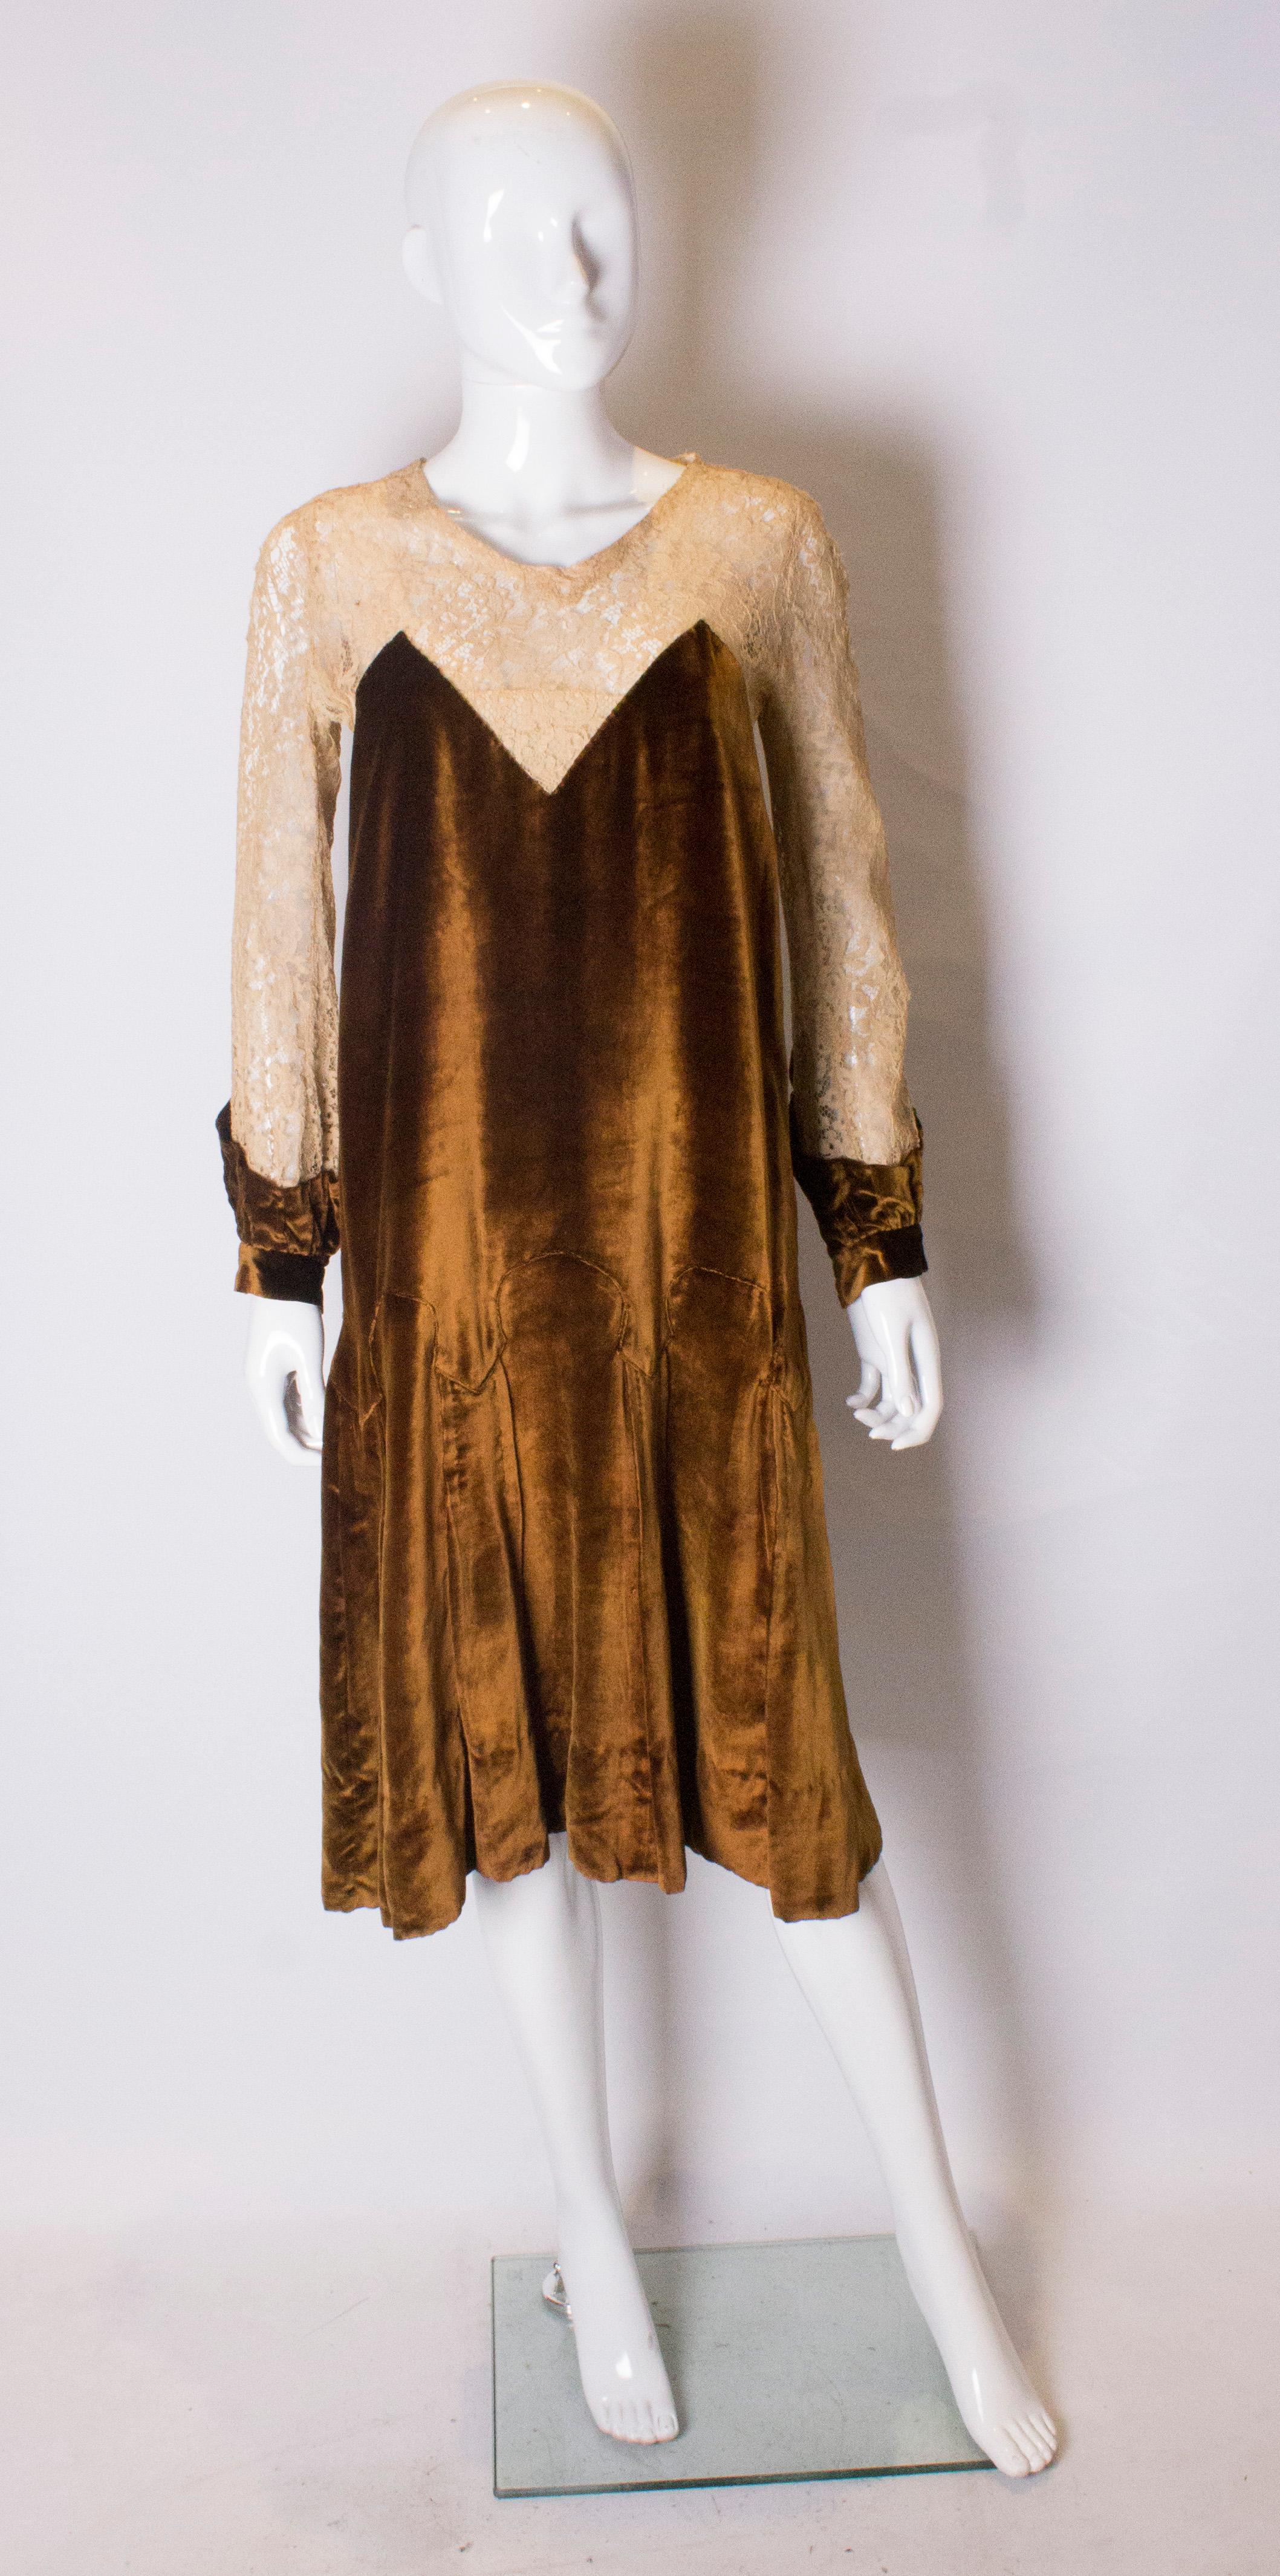 Une jolie robe des années 1920 dans un  velours de soie couleur rouille/or et dentelle couleur biscuit.  La robe s'ouvre par un bouton dans le dos et est doublée jusqu'au niveau des hanches. Les manches et l'empiècement sont en dentelle et la robe a